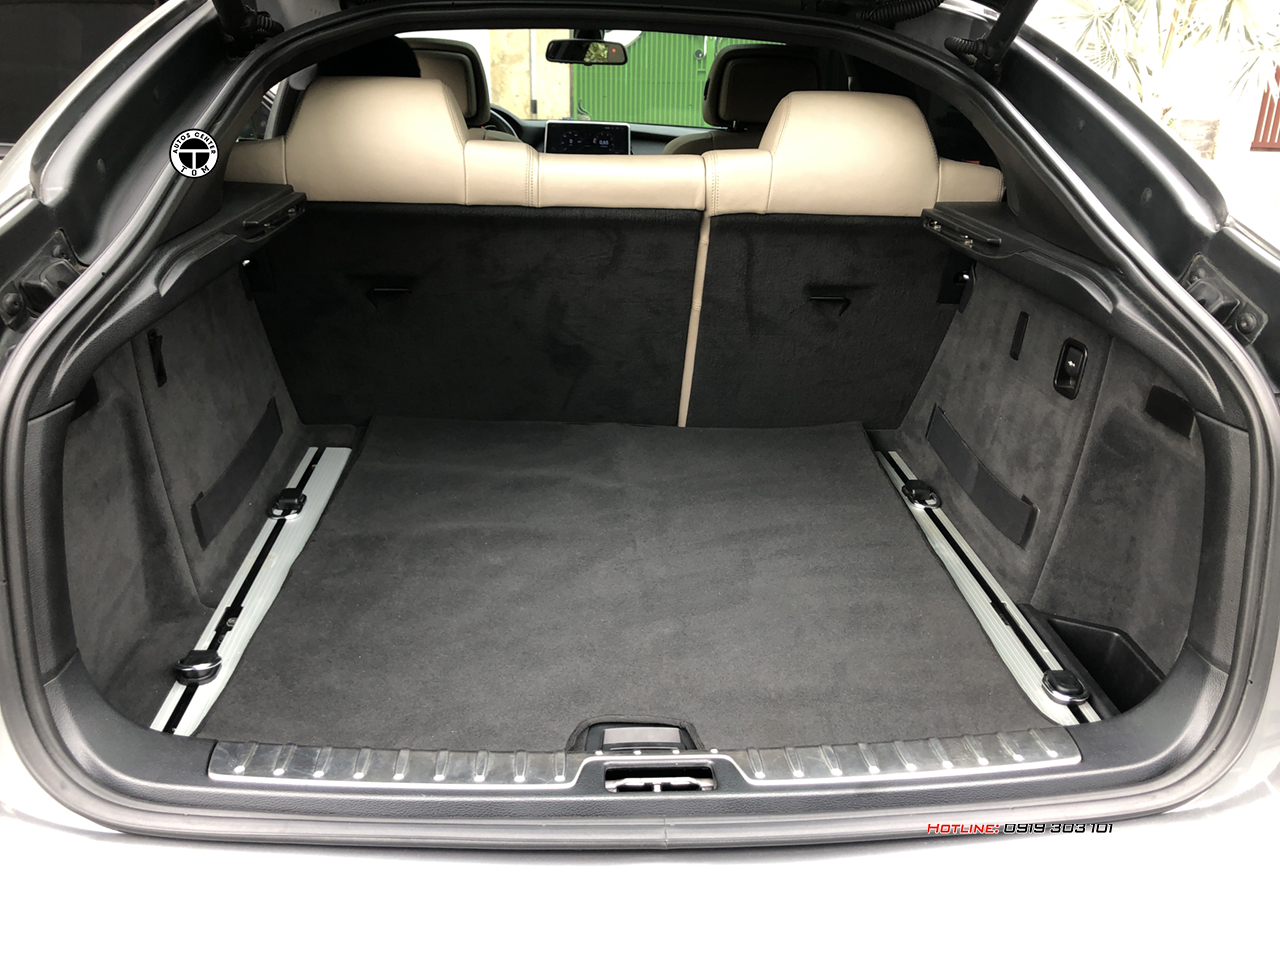 Cốp xe của BMW X6 cực rộng, thoải mái để hành lý cho những chuyến đi xa.